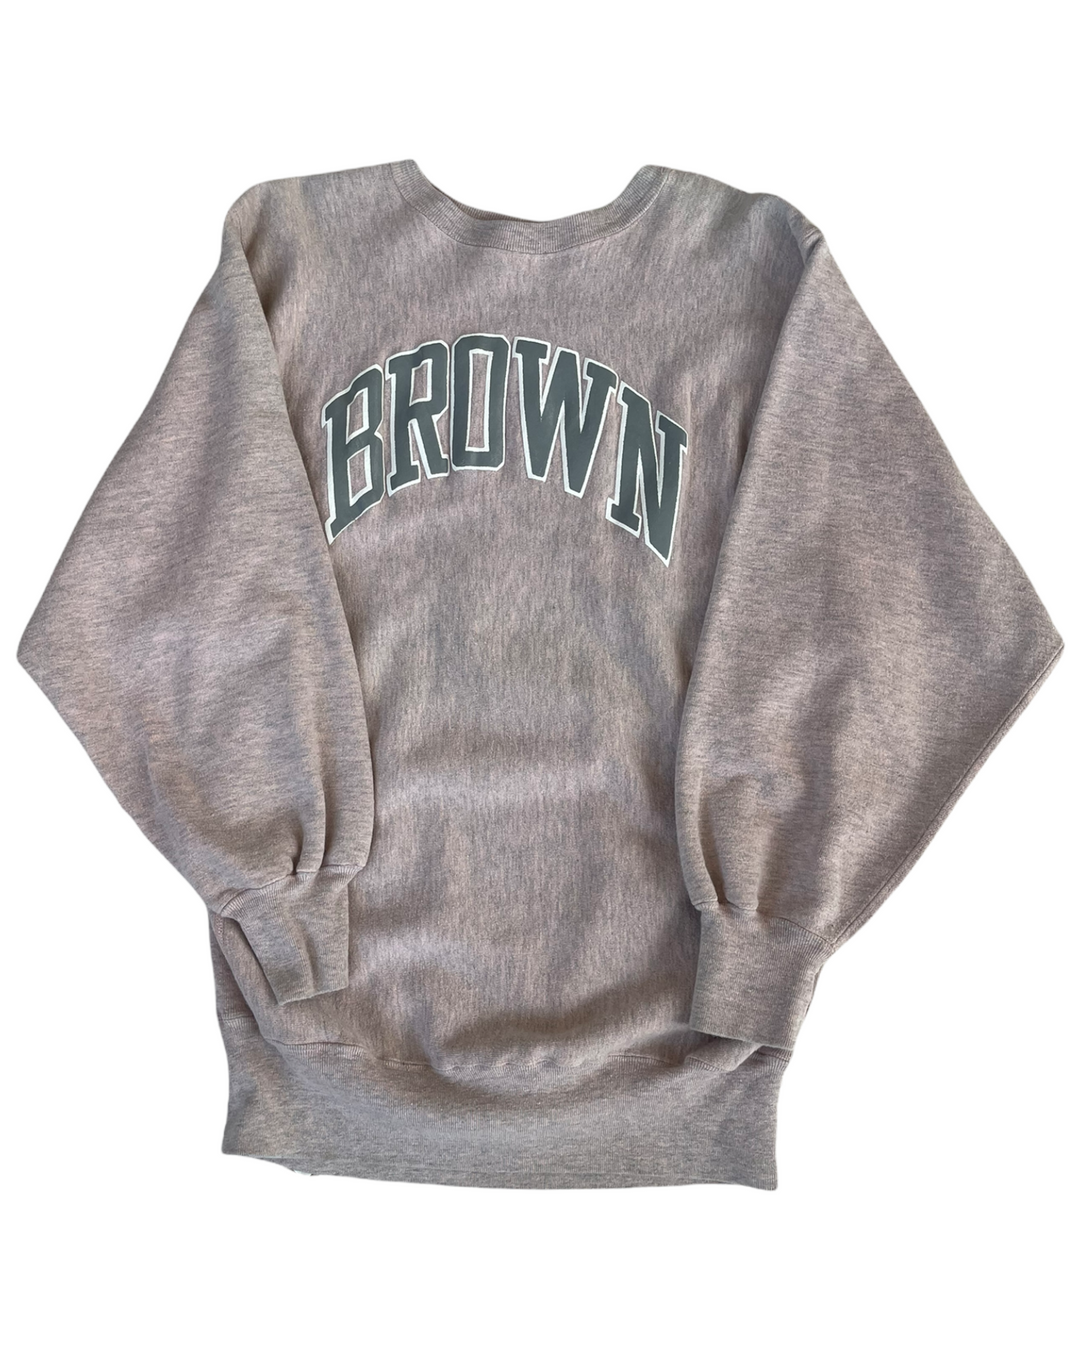 Brown Vintage Sweatshirt